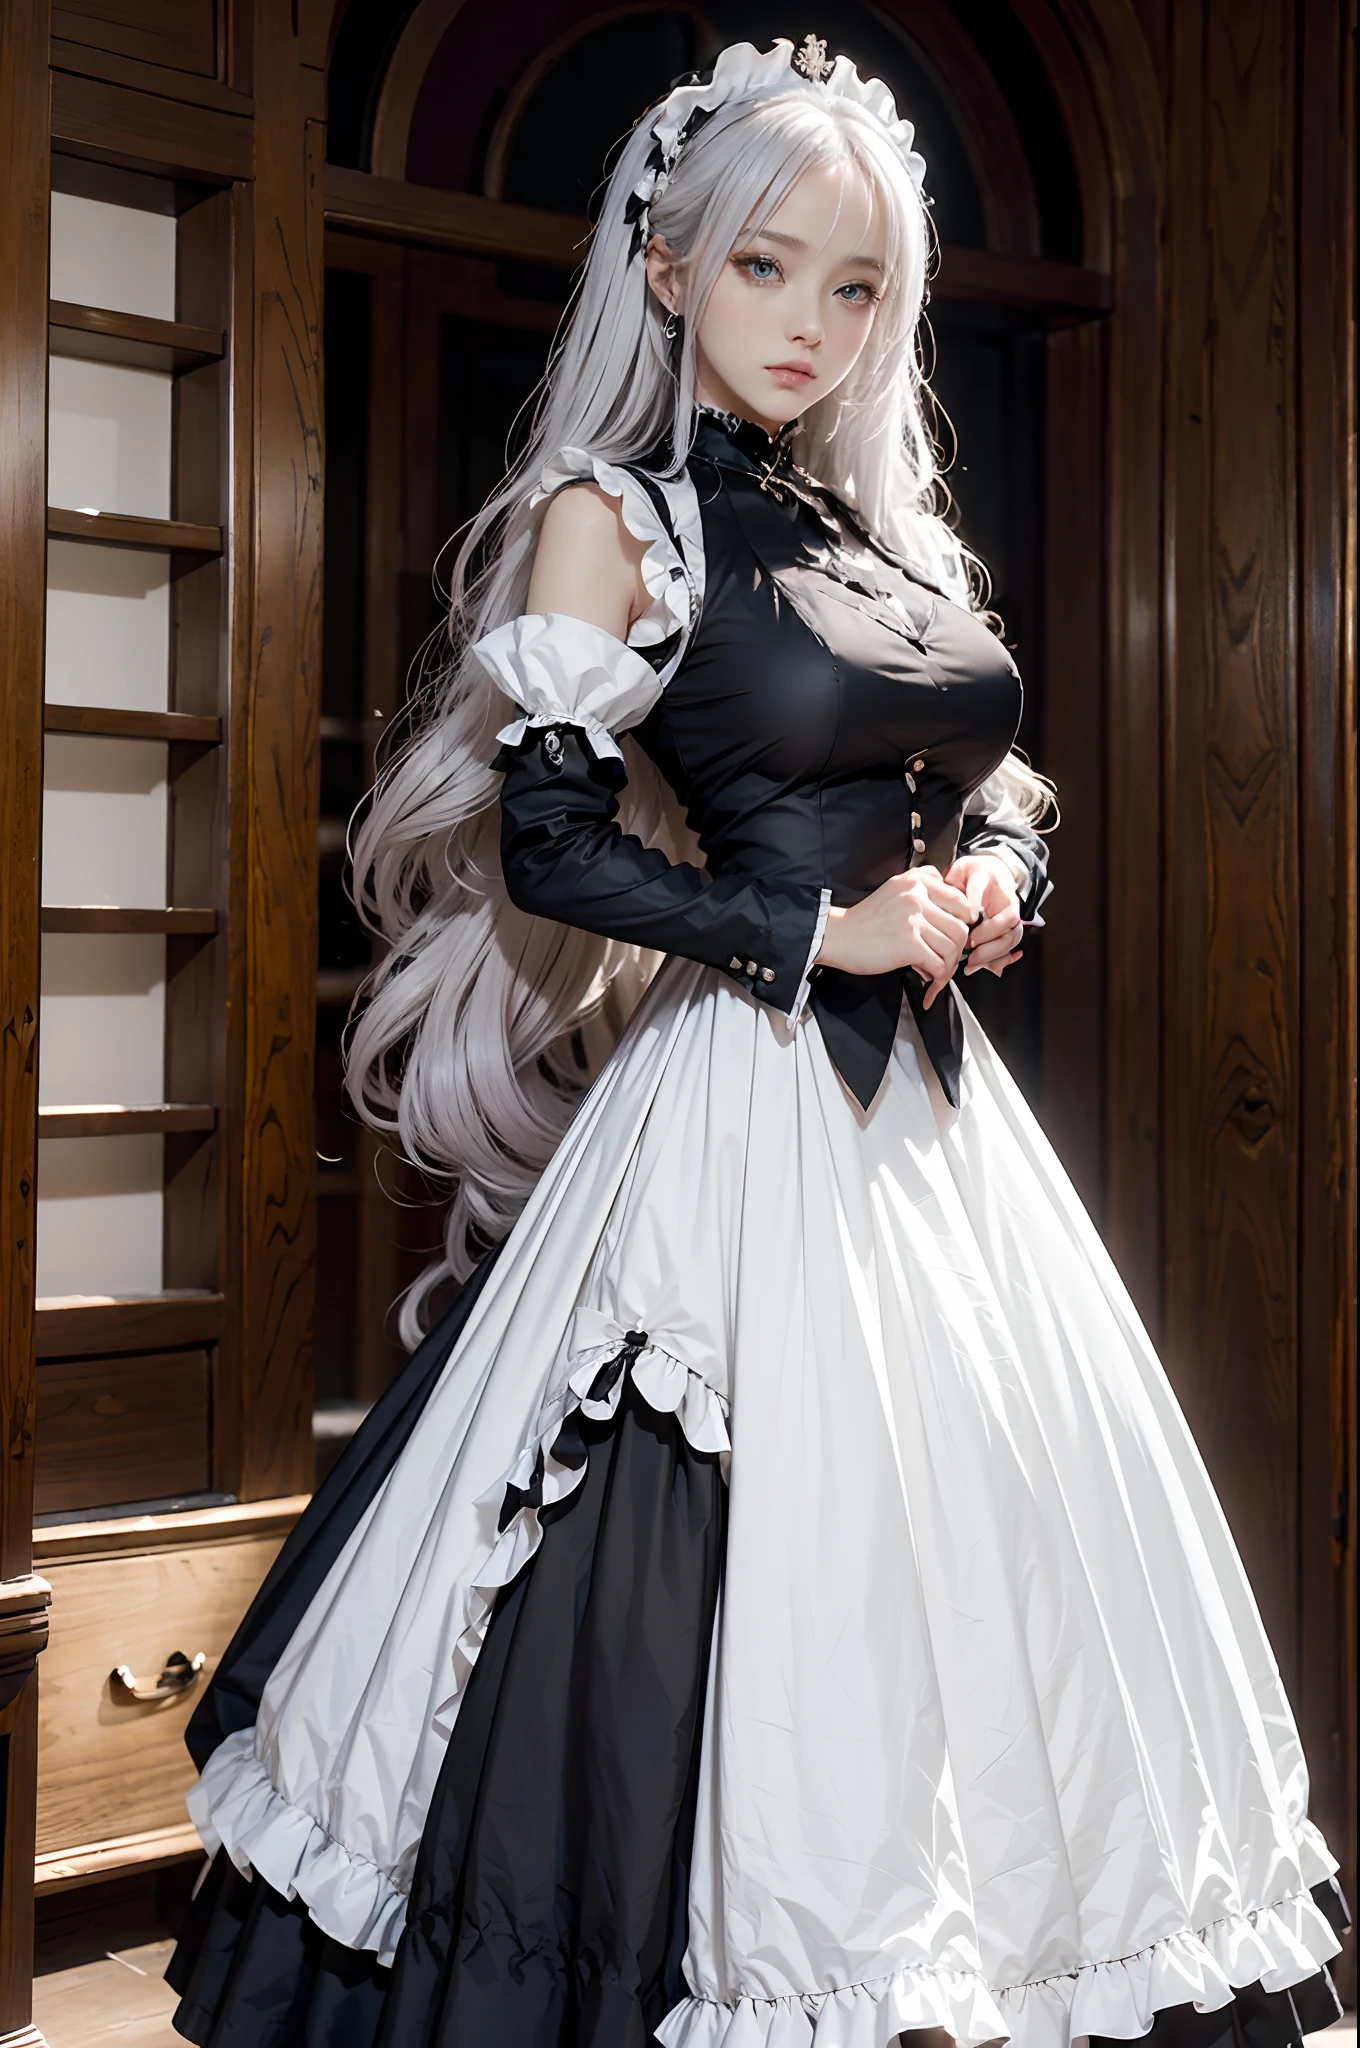 Die Frau, (Europäische Staatsbürgerschaft: 1.2) Im schwarz-weißen Outfit posiert sie für ein Foto, Mädchen! Kleid, Anime-Mädchen-Cosplay, Anime-Mädchen in einem Dienstmädchenkostüm, Das prächtige Mädchen, Dienstmädchen-Outfit, Cosplay-Kostüm photo, Cosplay-Kostüm, anime Cosplay-Kostüm, Ein paar süße Posen, (Ein verführerisches Porträt von Marvel&#39;s Storm: 1.2), (sonnengebräunte Haut: 1.2) (schneeweißes Haar!), (Gesicht der Göttin), (Elegante Haltung: 1.4), elegante Atmosphäre, Edles Ambiente, (Milf: 1.6) (Glänzend strahlend weißes Haar: 1.5), (Cyanfarbene Augen: 1.4), (Dienerin: 1.4), (Schwarz-weißes Dienstmädchen-Outfit: 1.1), (Unglaubliche Schönheit, hohe Gesichtsdetailliertheit:1.3),